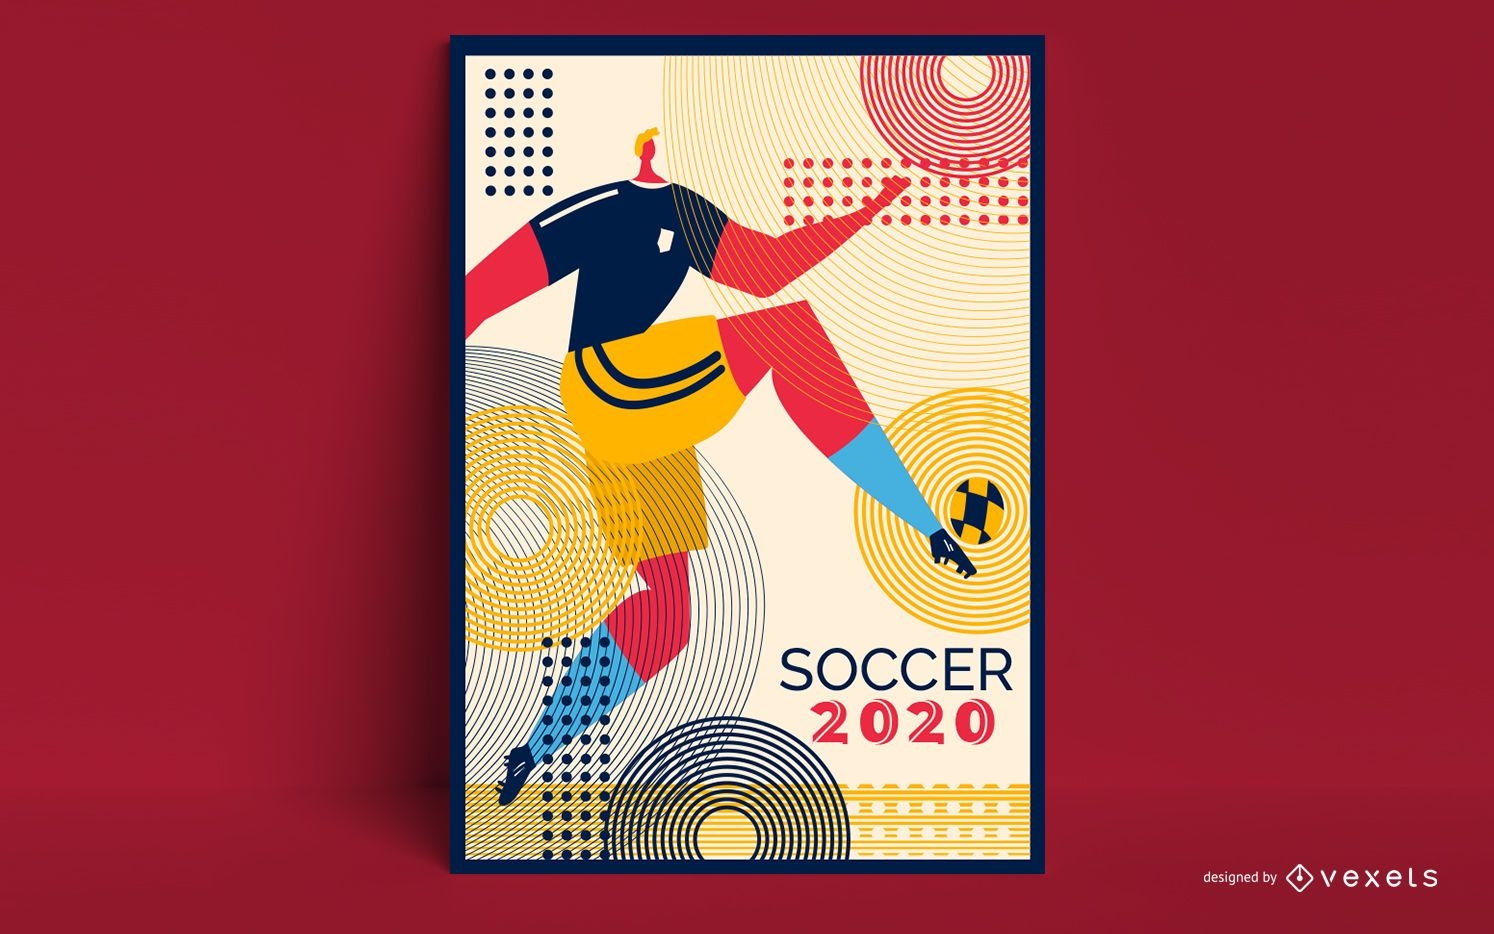 Design de P?ster de Futebol 2020